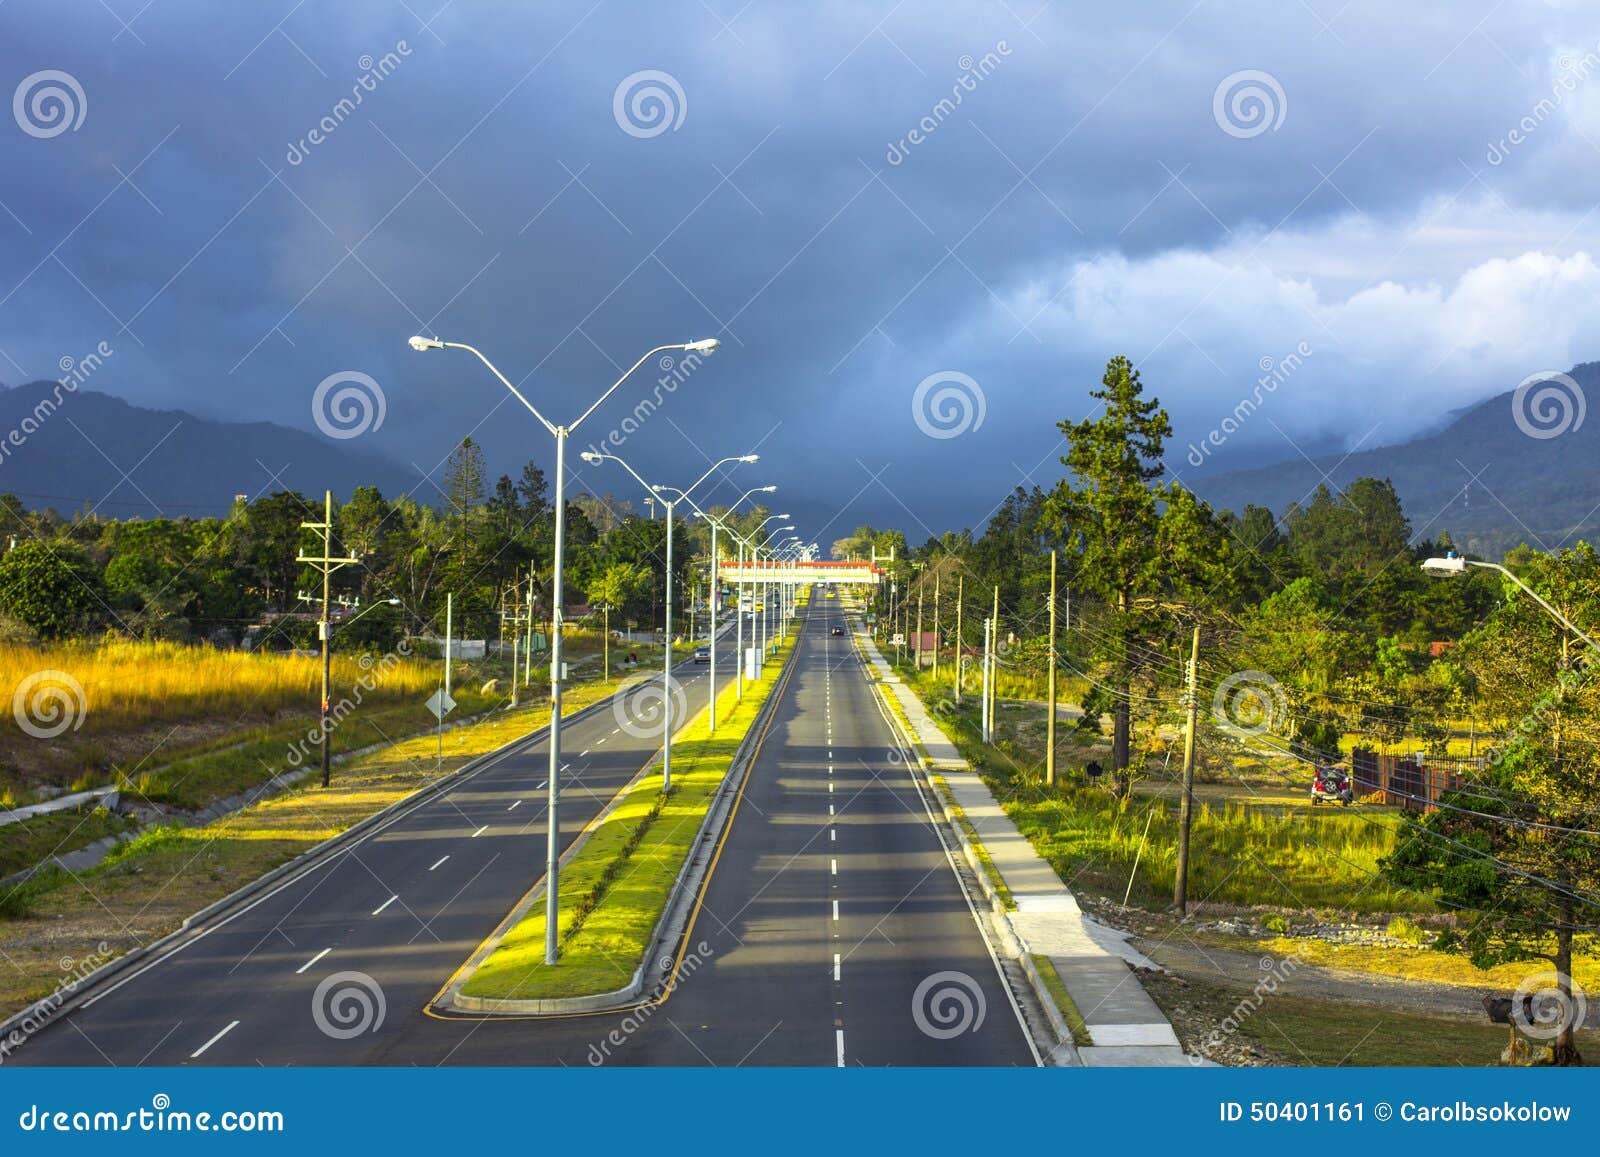 highway to boquete, panama